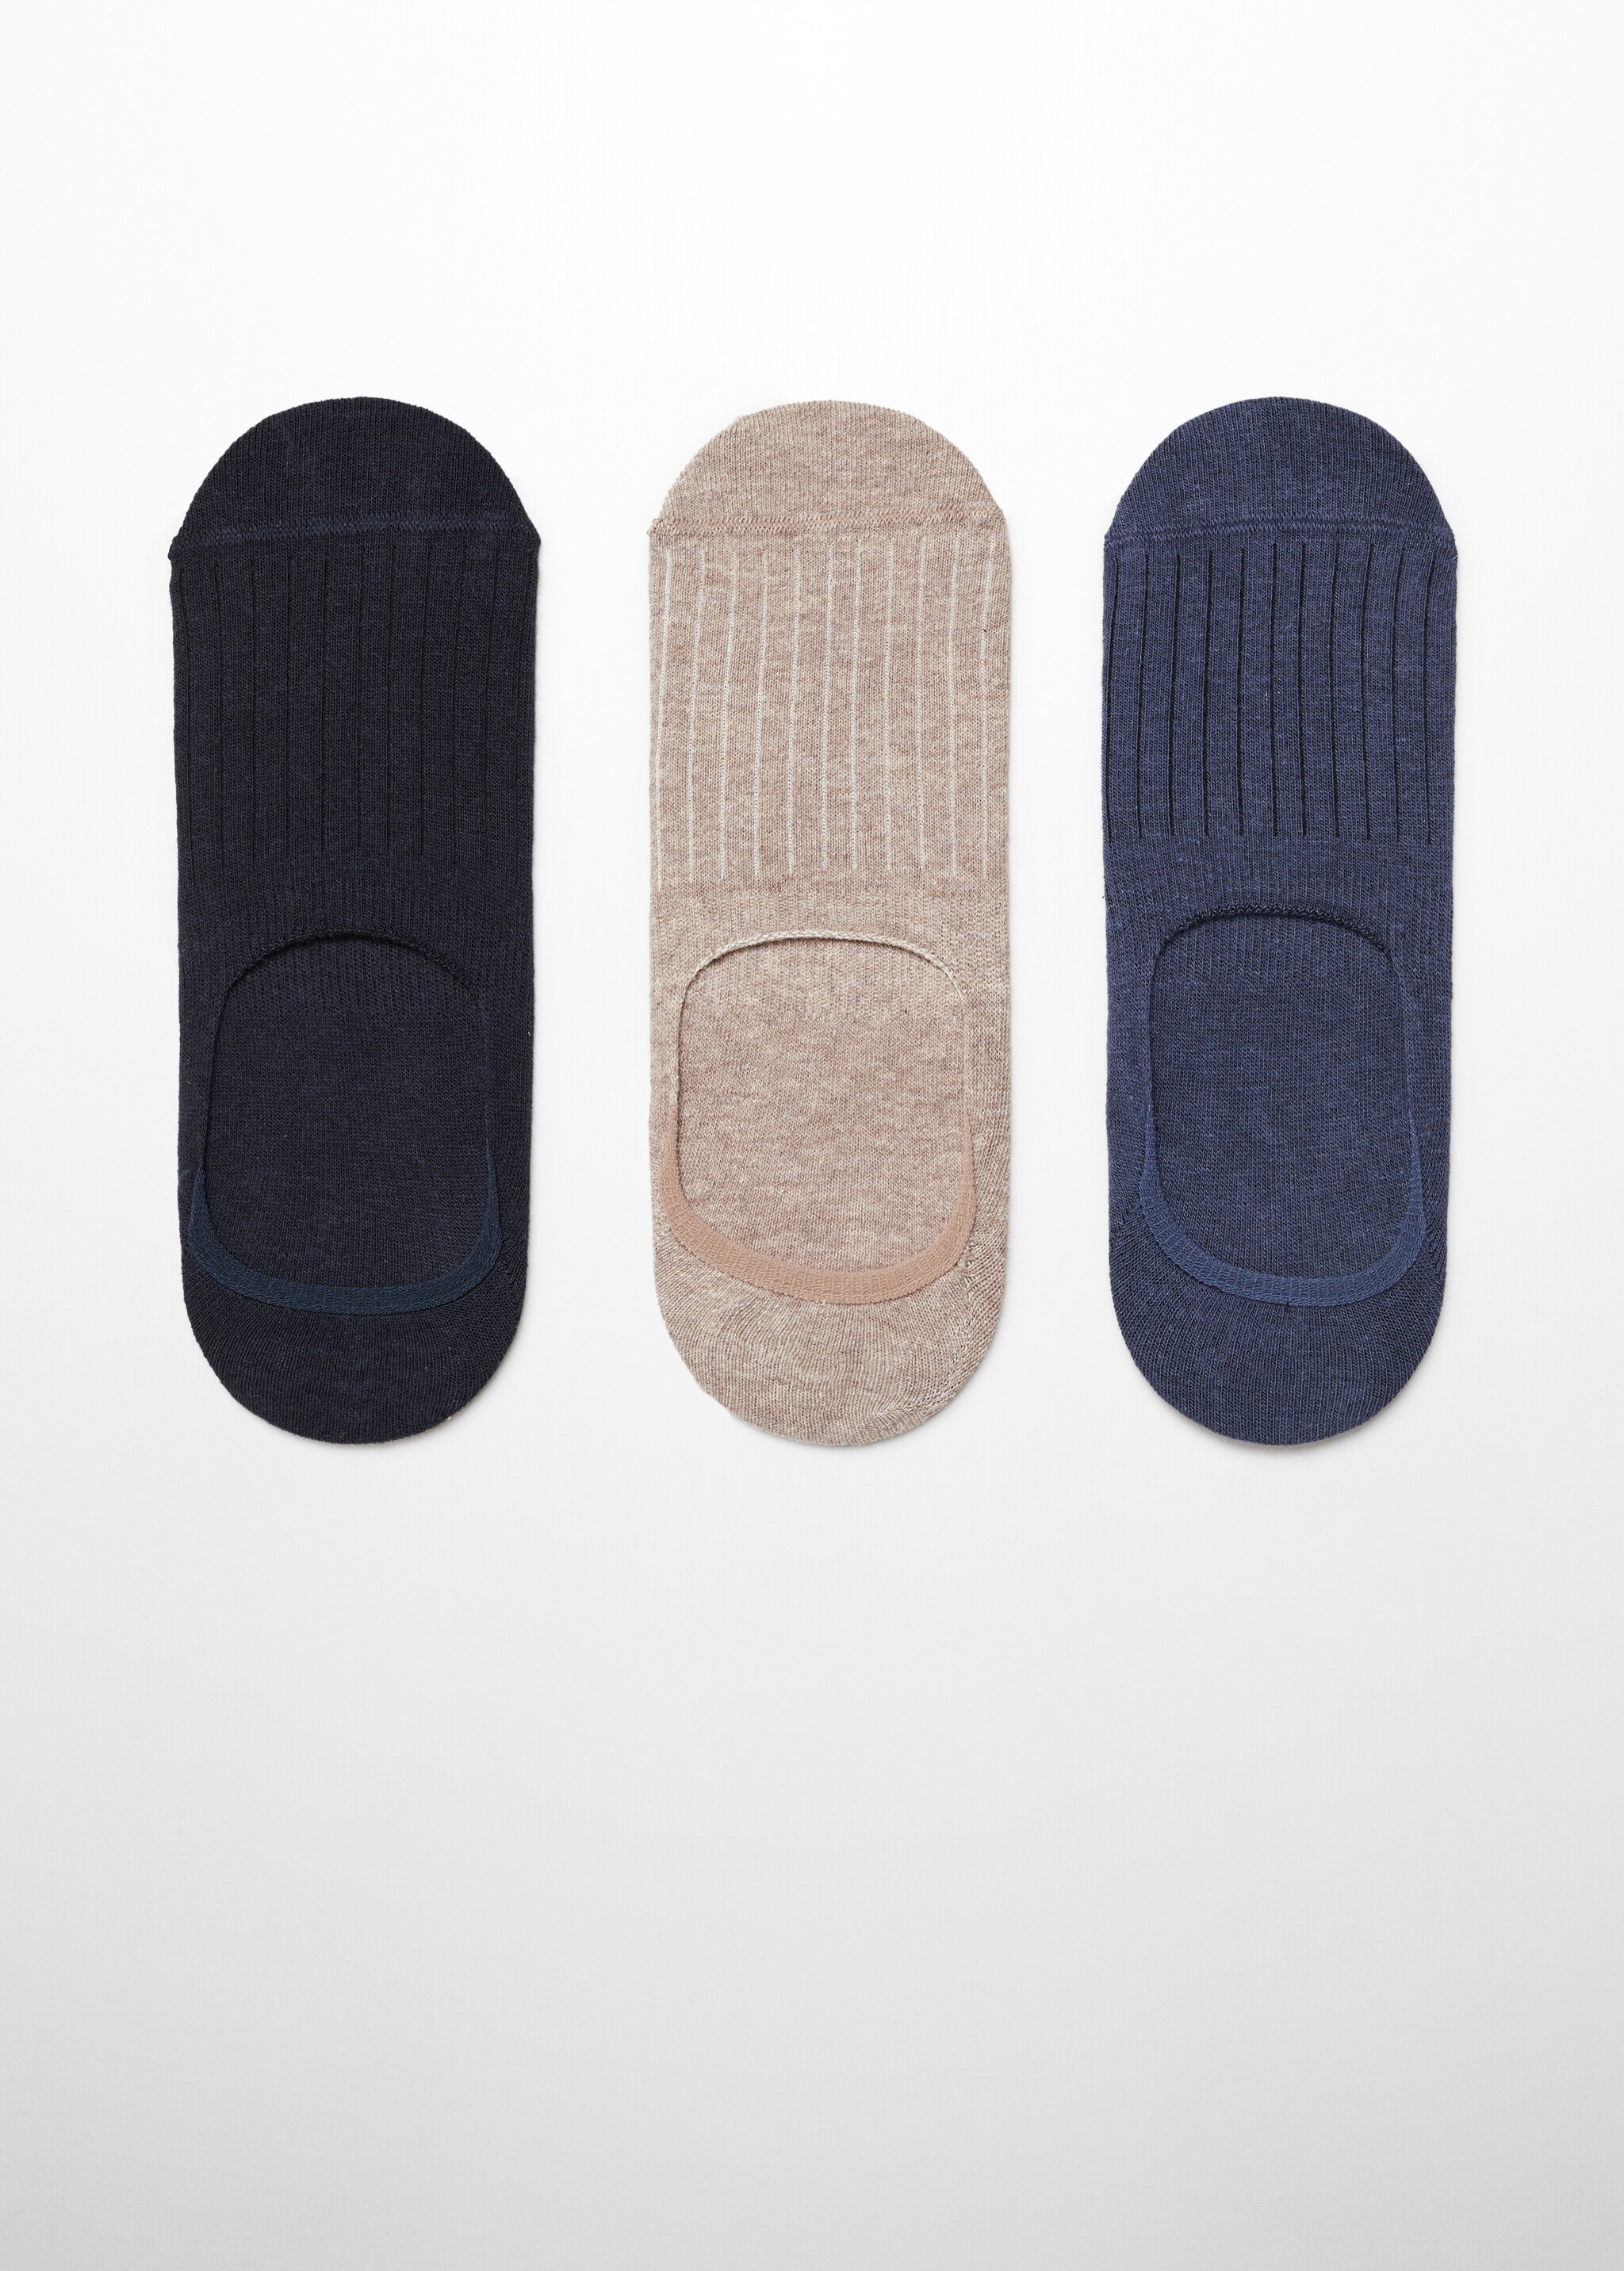 Pack 3 calcetines diseño rayas - Artículo sin modelo